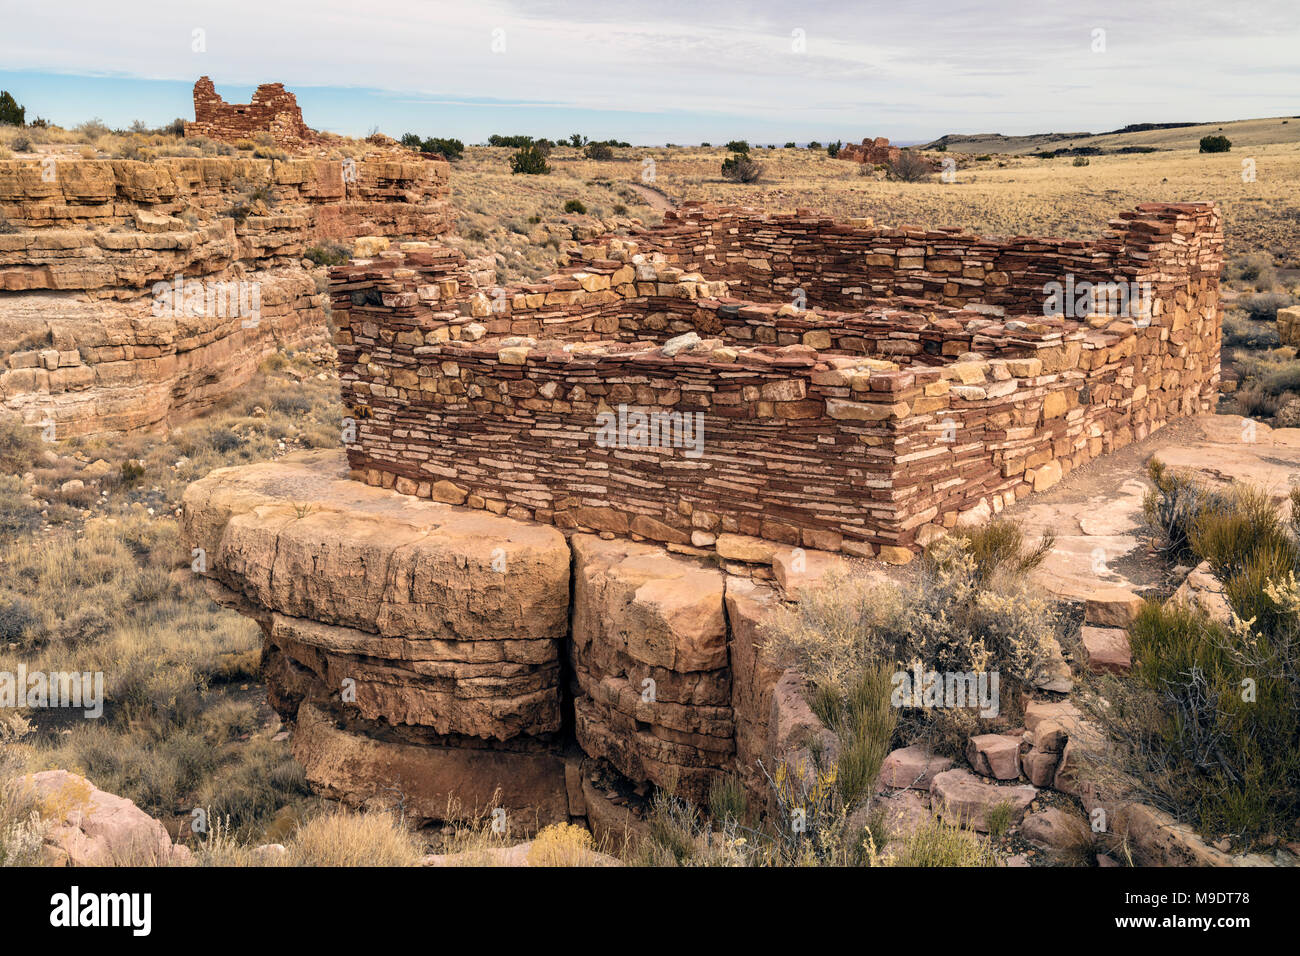 800 Year Old Box Canyon Ruins, Wupatki National Monument, Arizona Stock Photo